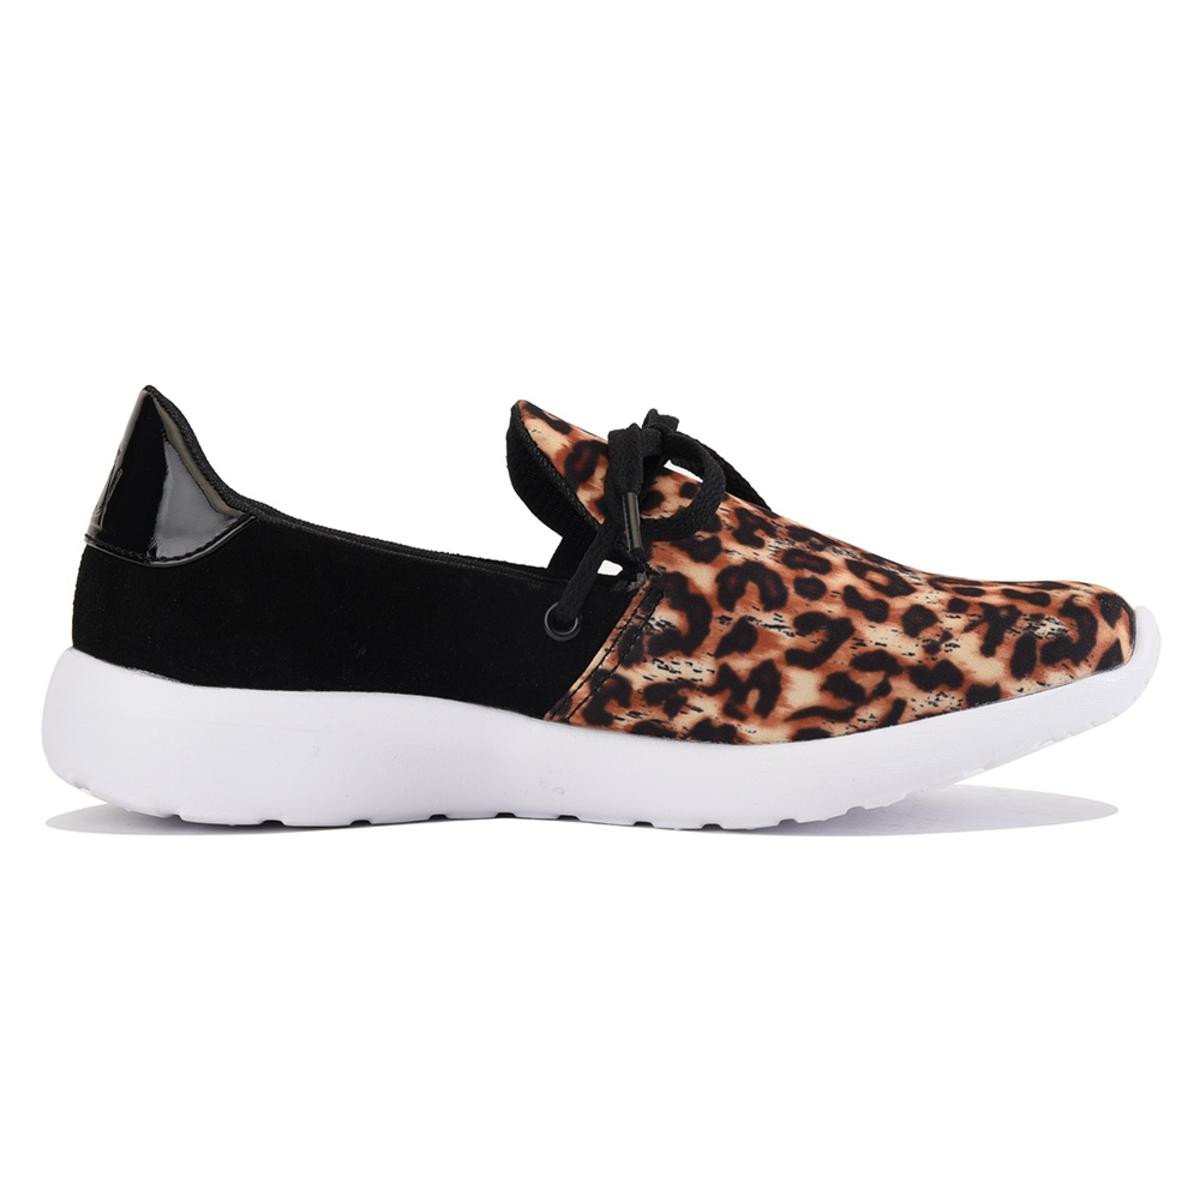 Y.R.U. for Women: Beem Leopard Sneaker